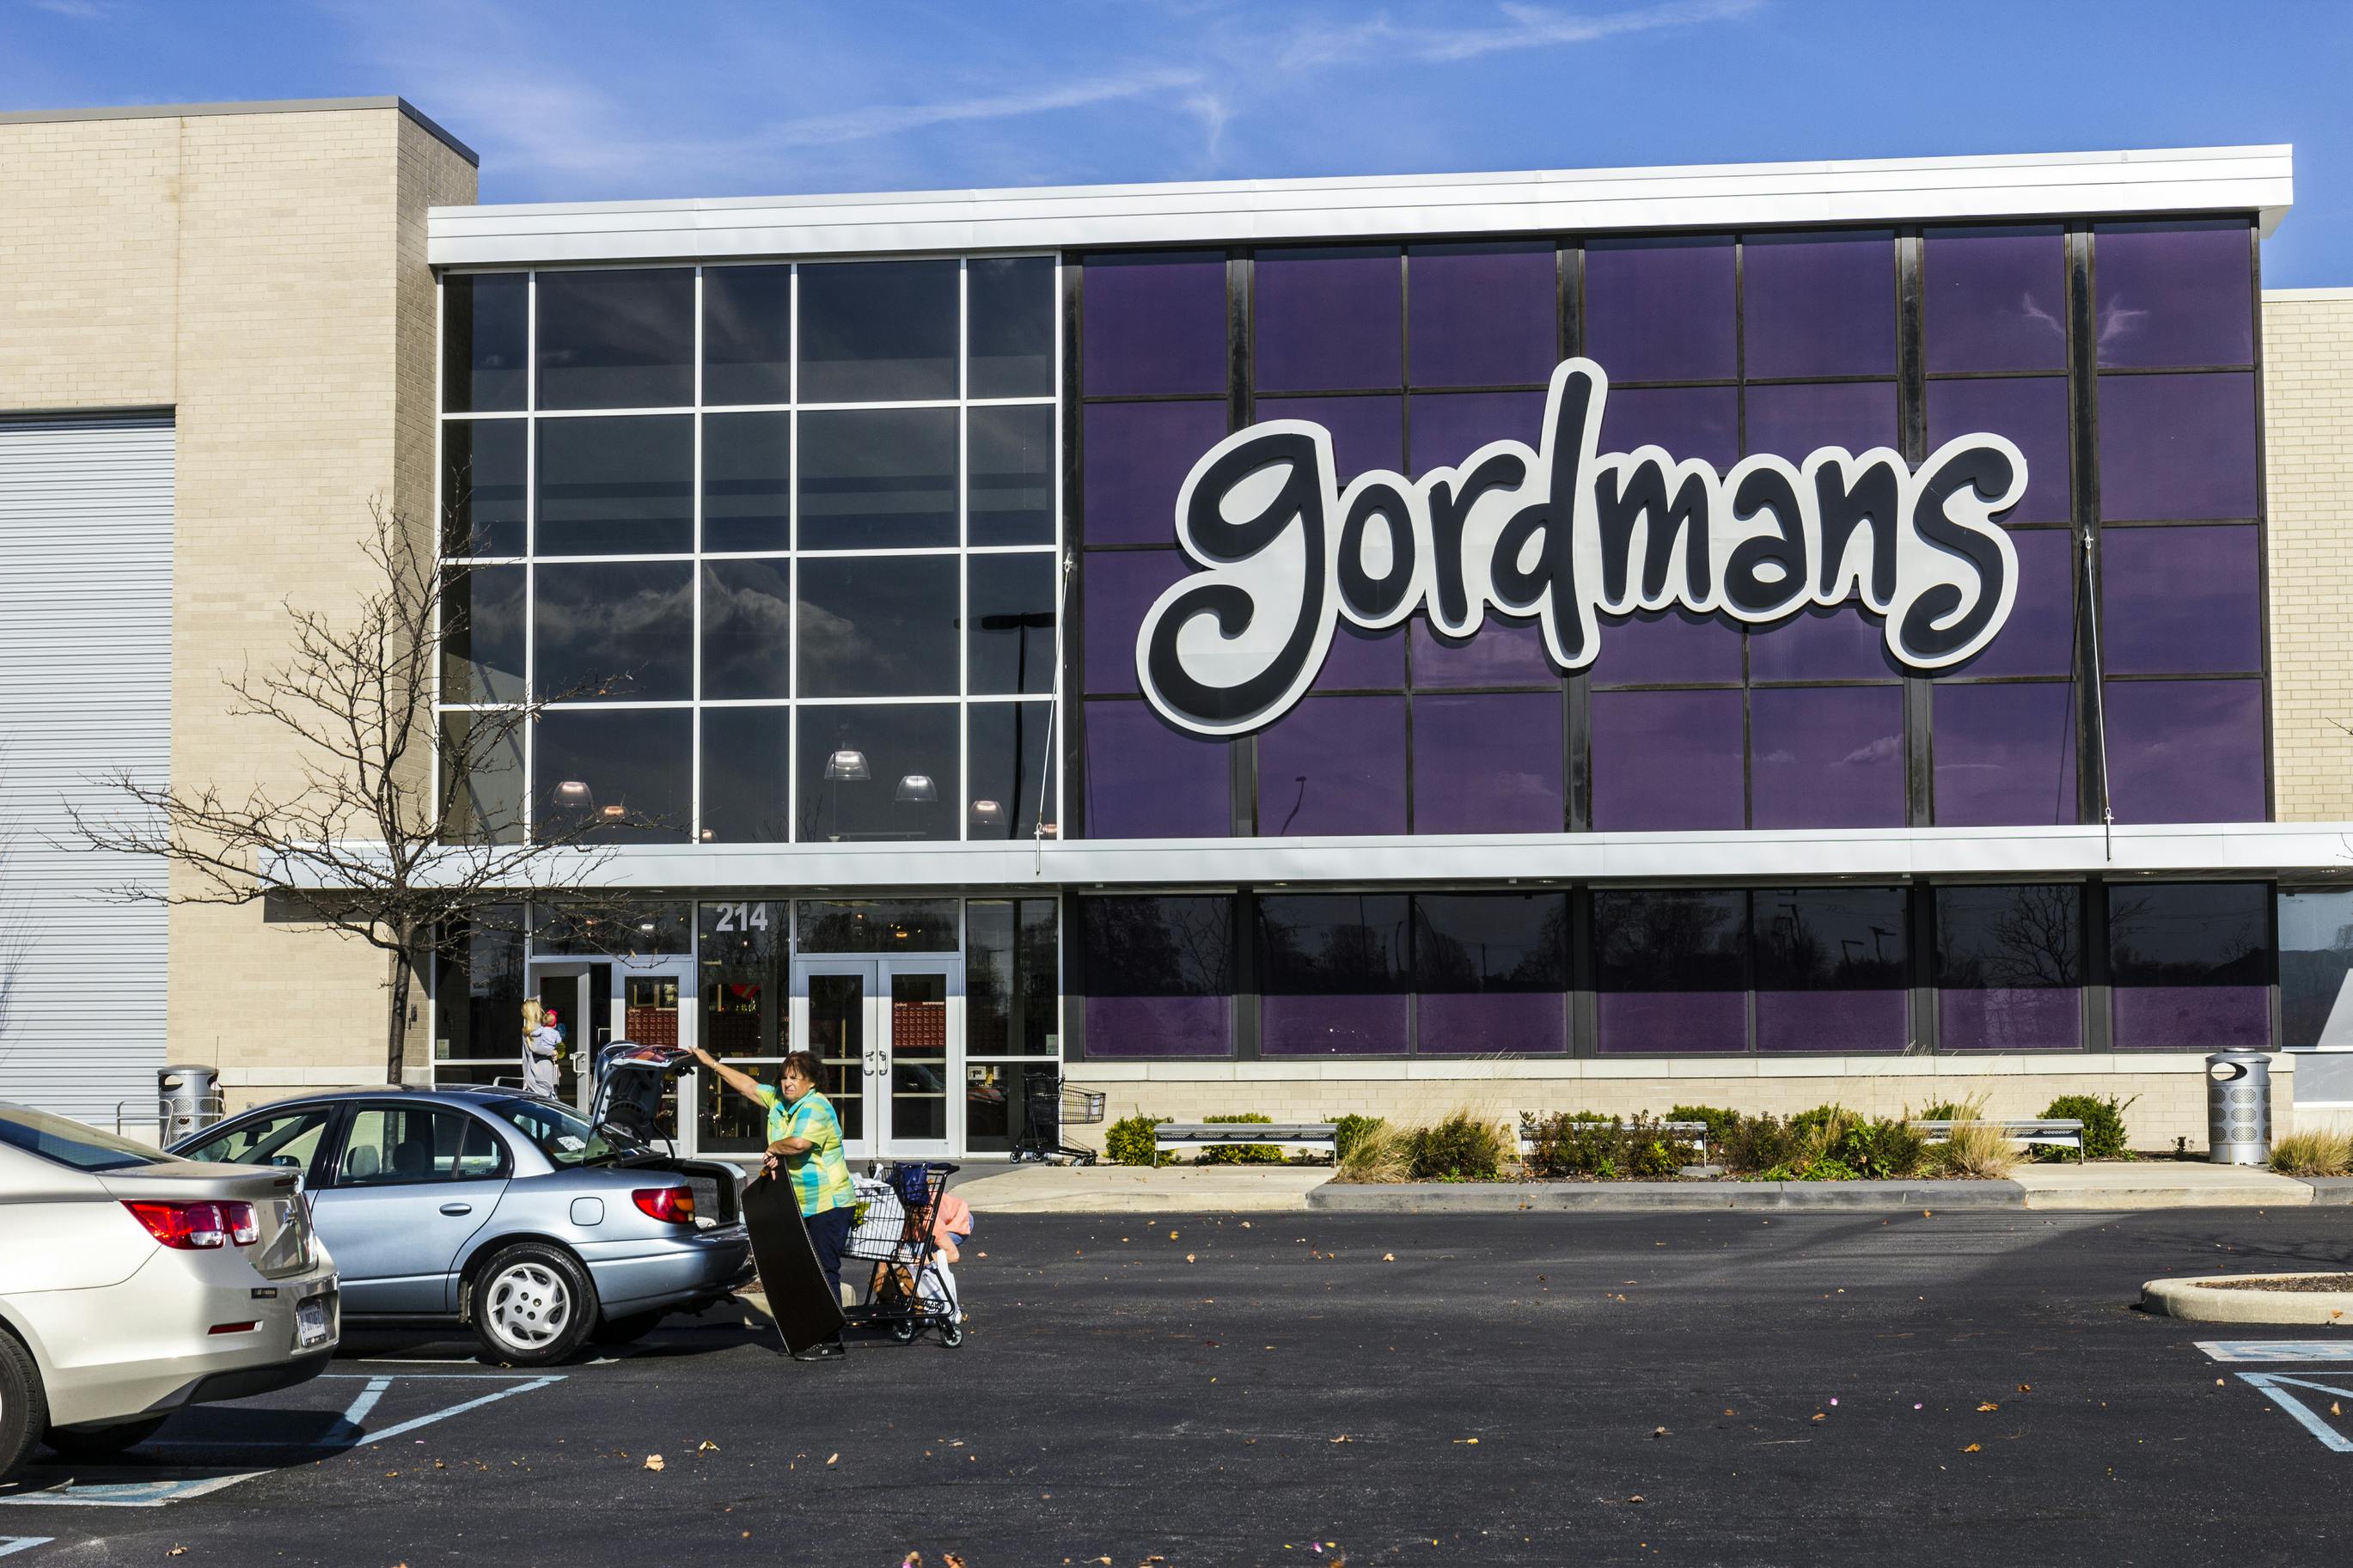 gordmans storefront and parking lot